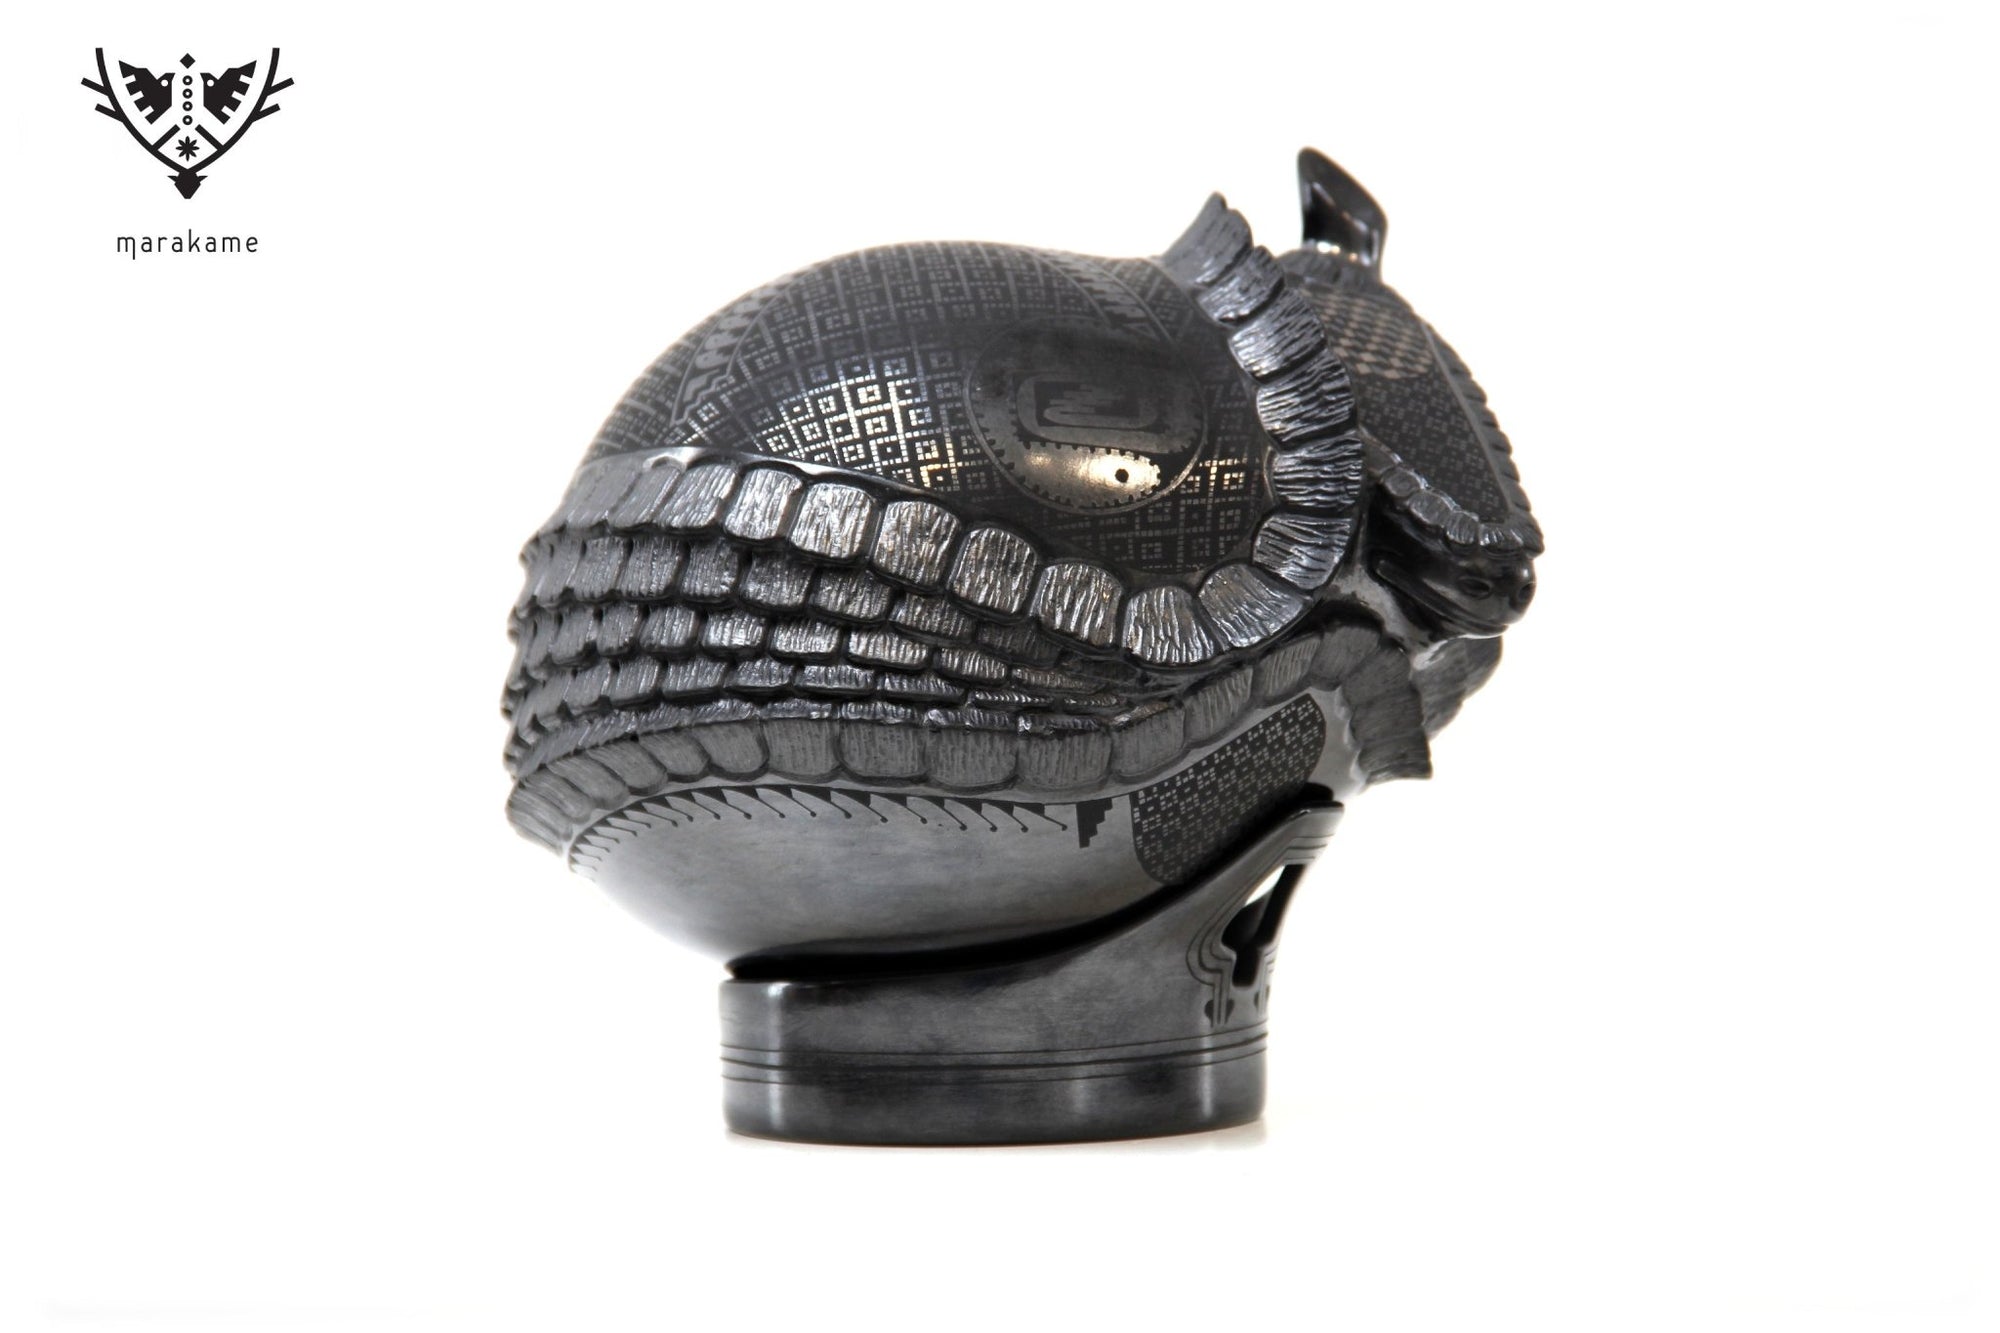 Mata Ortiz Keramik – Gürteltier – Huichol-Kunst – Marakame